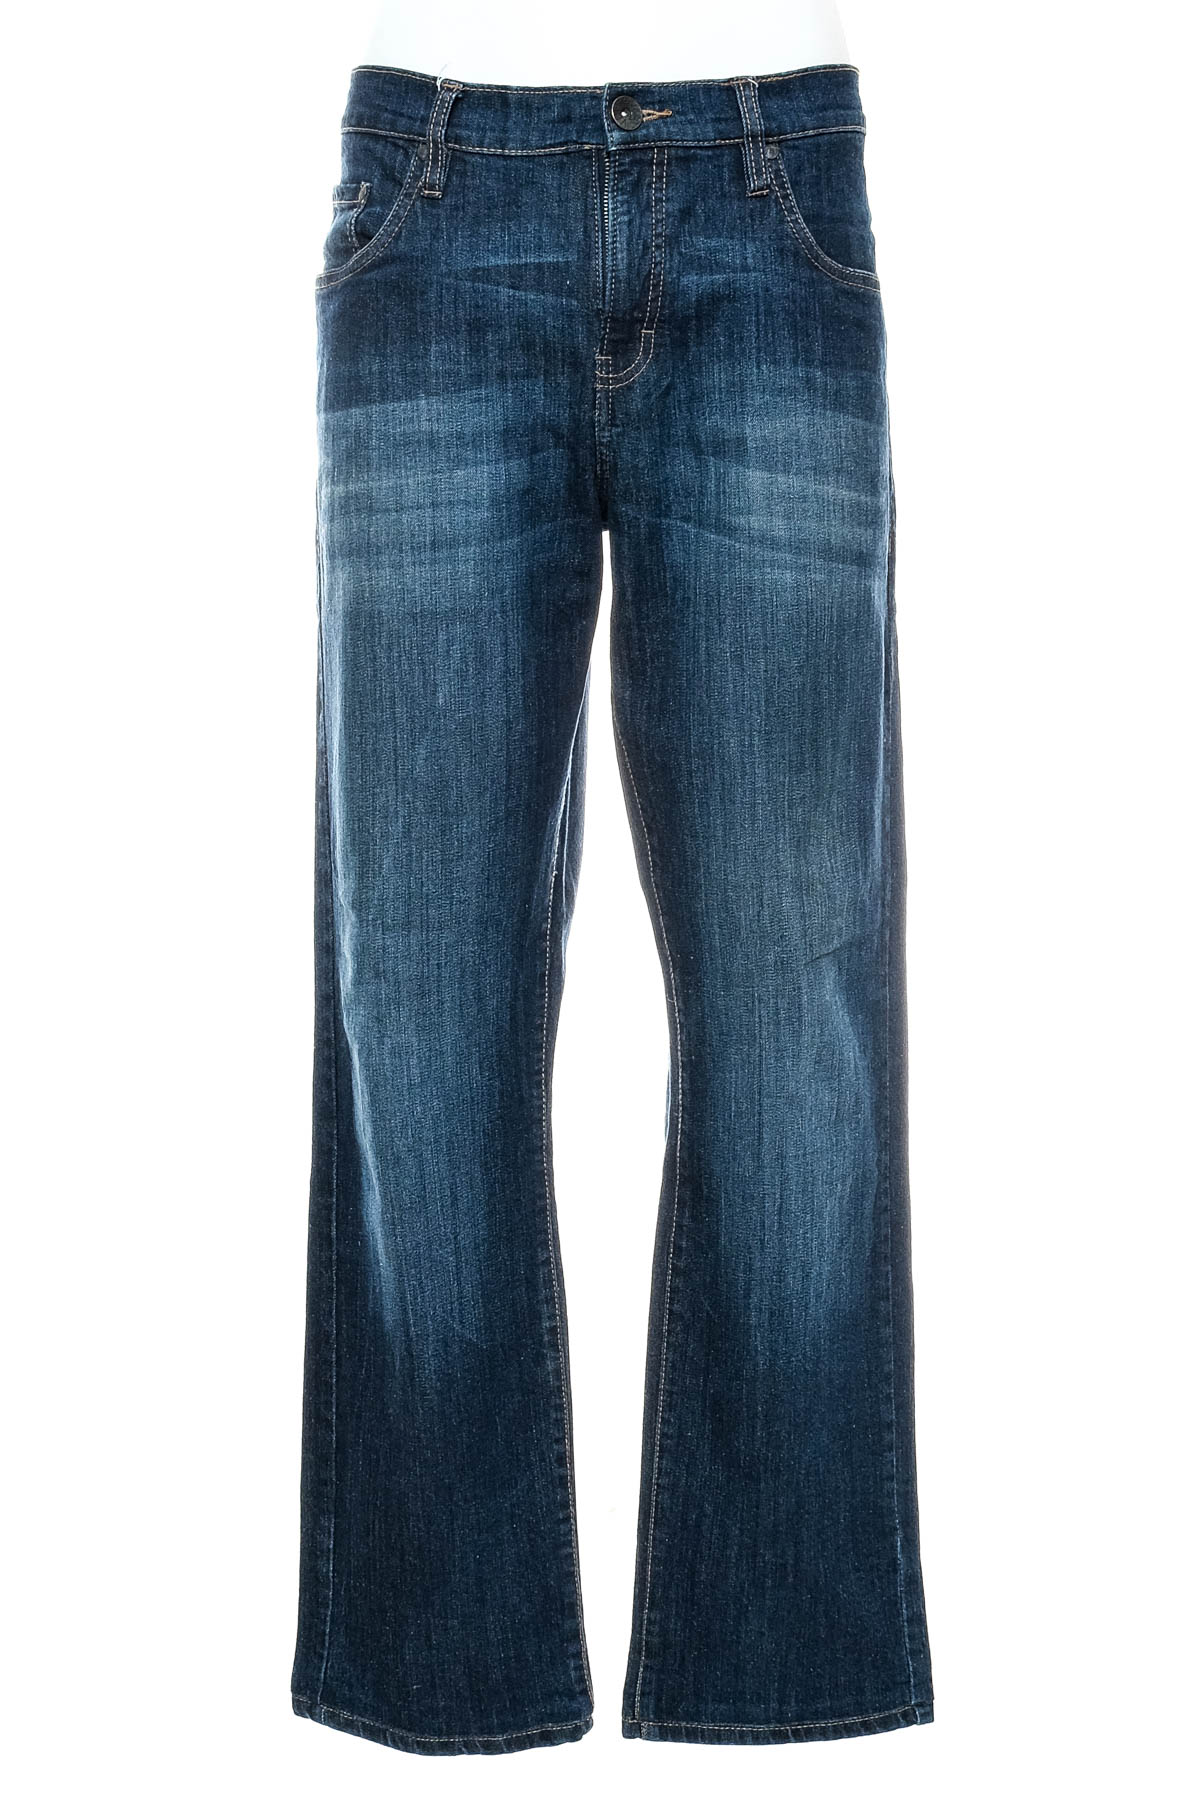 Men's jeans - Watsons - 0